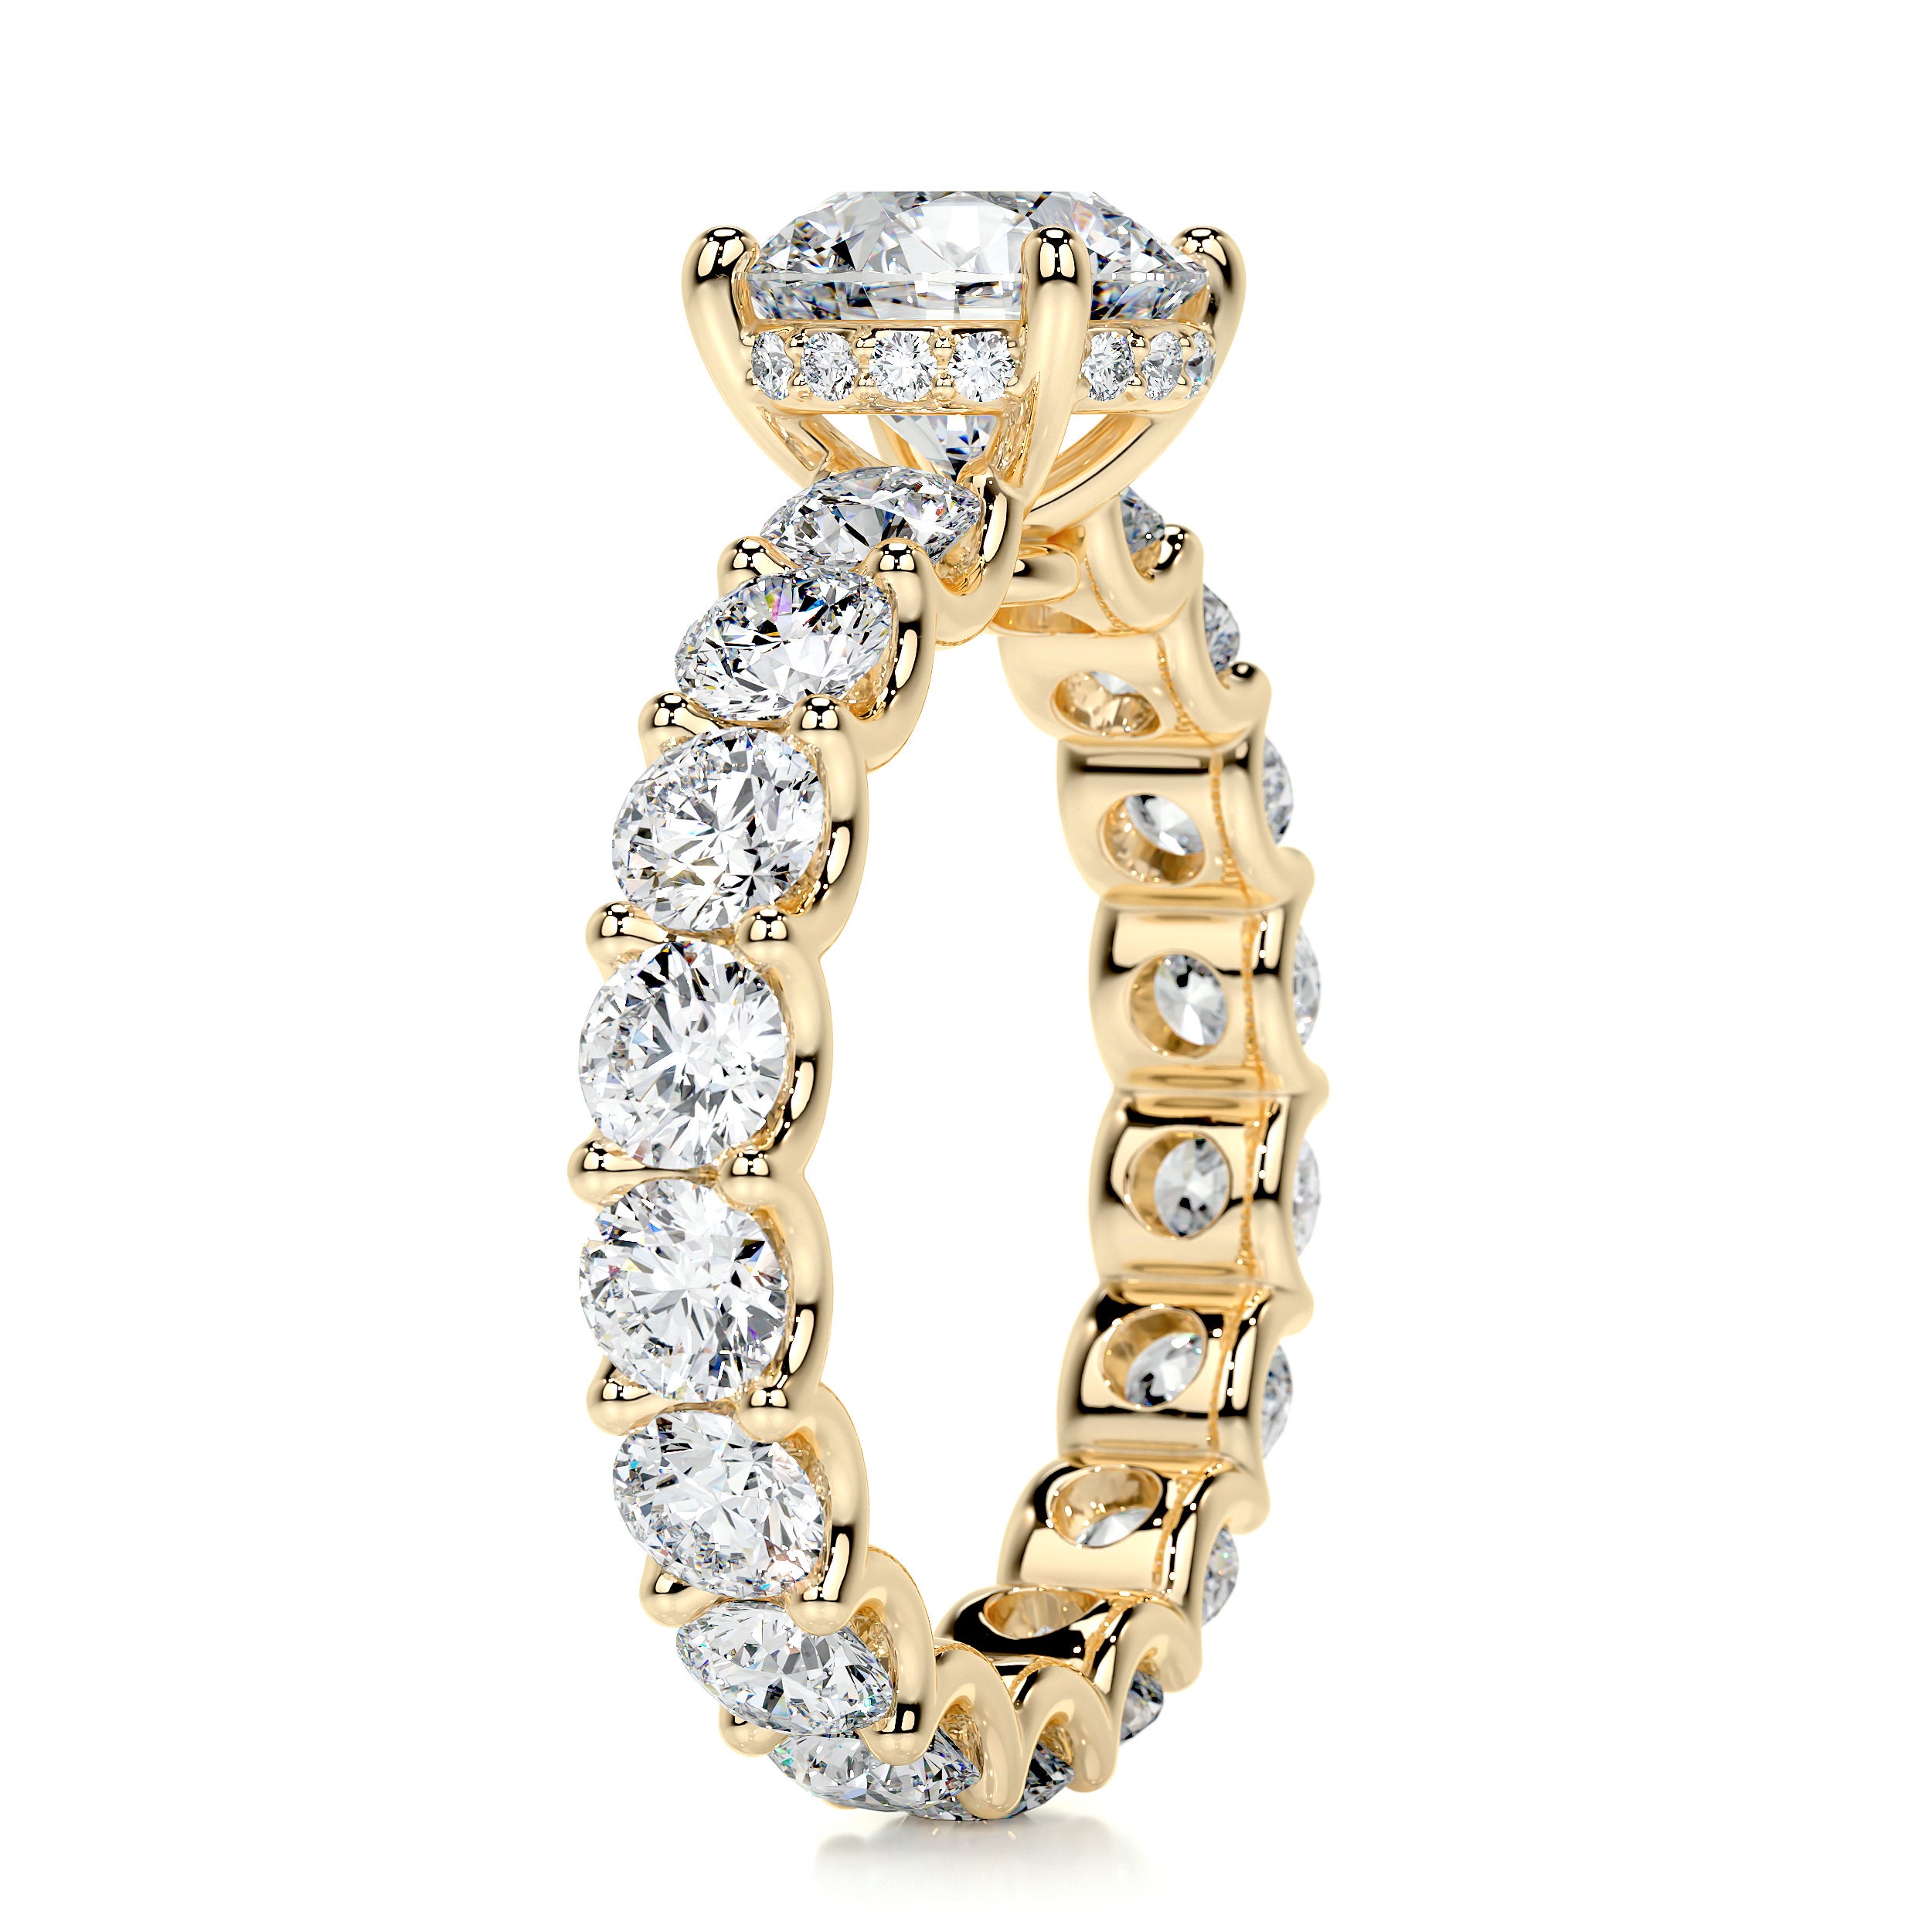 Lola Diamond Engagement Ring   (3.25 Carat) -18K Yellow Gold